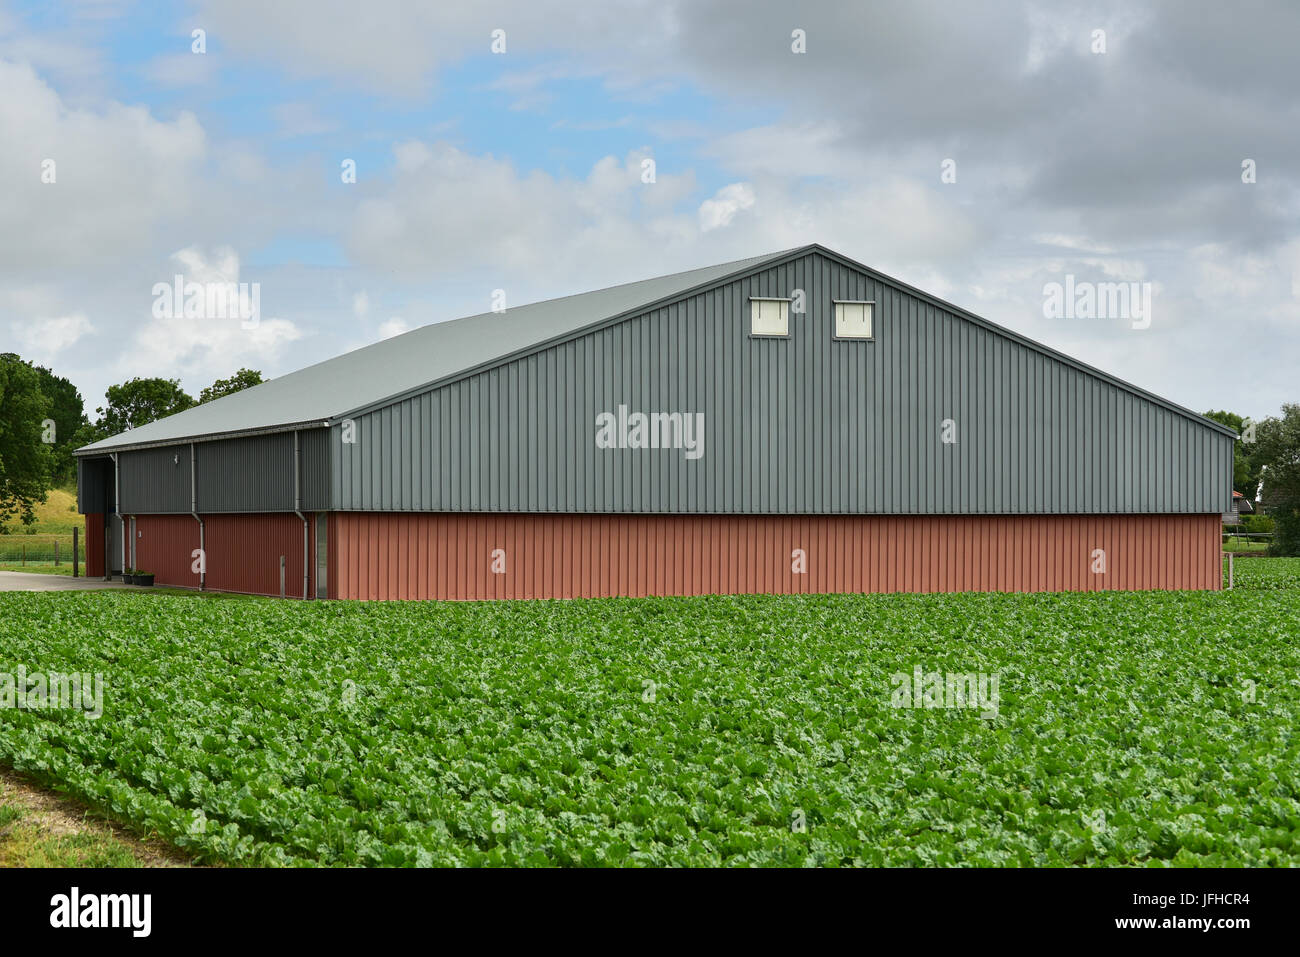 Grange de ferme moderne pour le stockage de la récolte ou machines agricoles dans un paysage agricole Banque D'Images